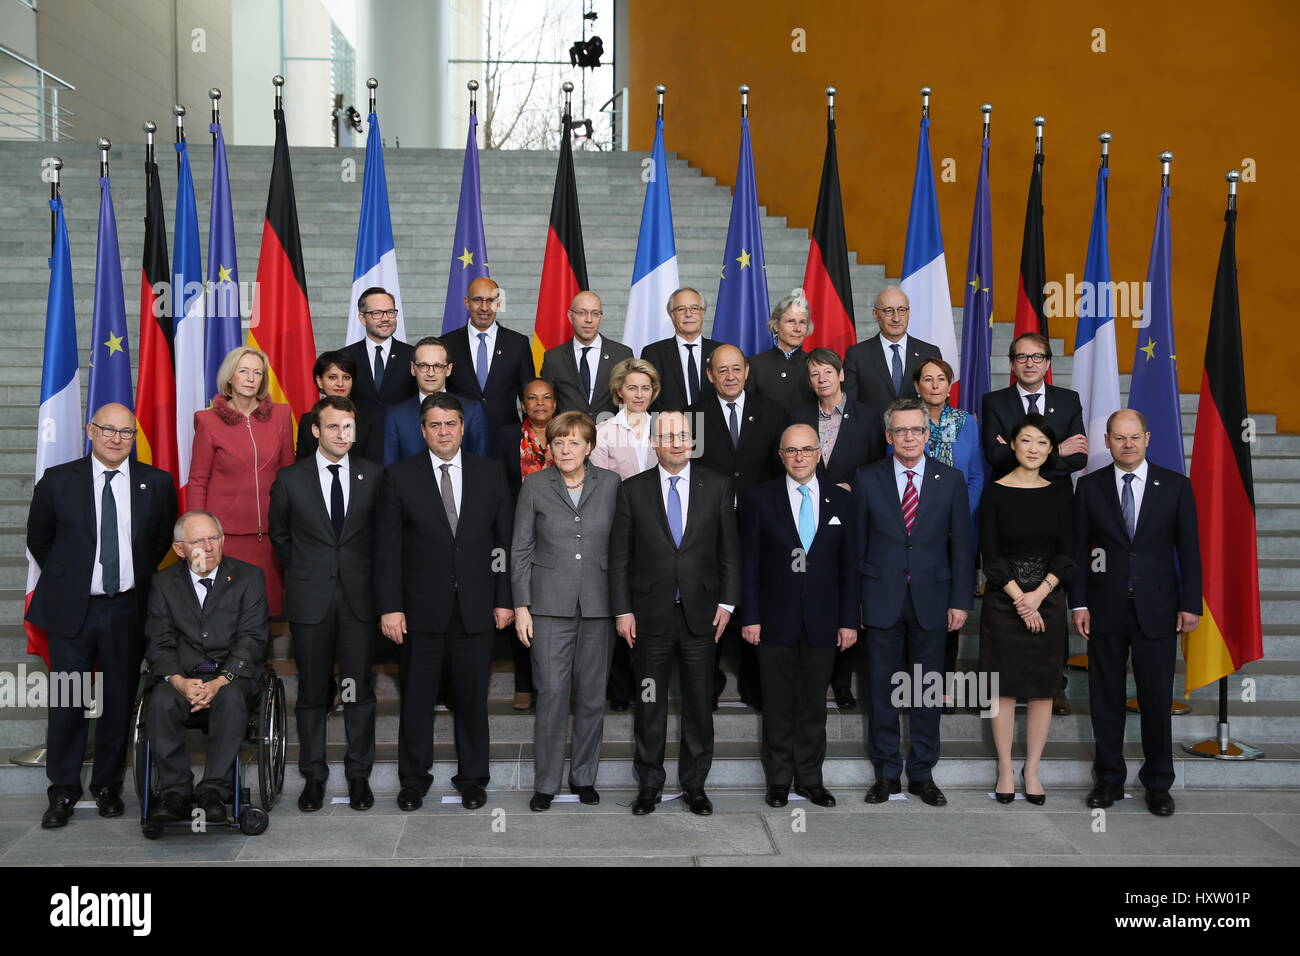 Berlín, Alemania, el 31 de marzo de 2015: Ministro Francés Alemán consejo celebró. Foto de stock